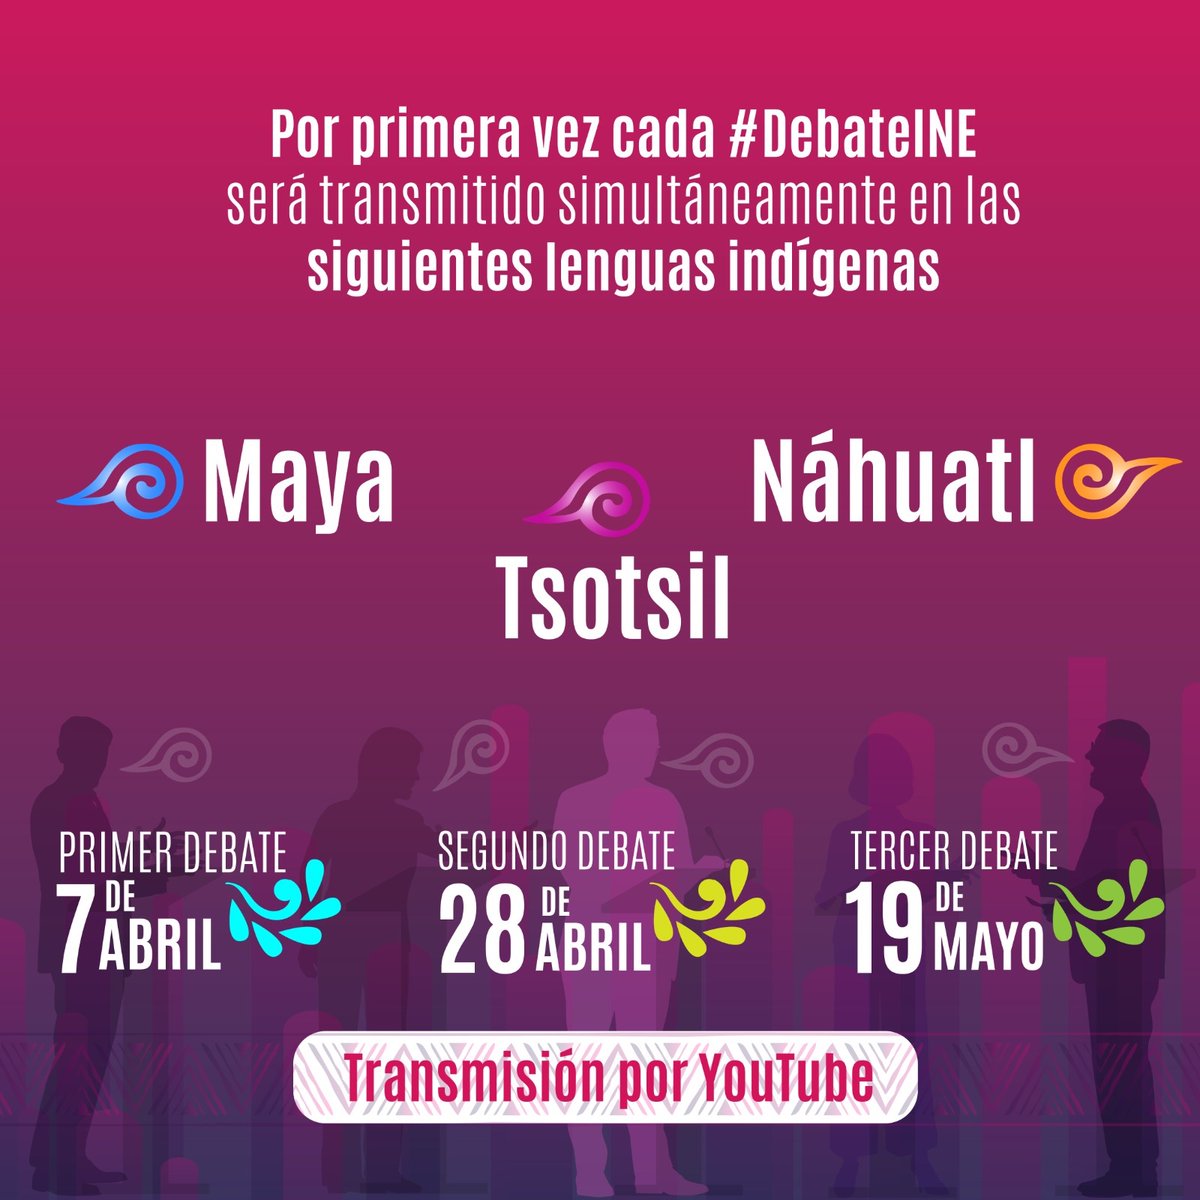 Abro hilo🧵 sobre el primer debate presidencial del 7 de abril, centrándome en la interpretación simultánea a tres lenguas indígenas #Tsotsil #Nahuatl y #Maya, como ejercicio de nuestros #Derechos Lingüísticos como #PueblosIndígenas